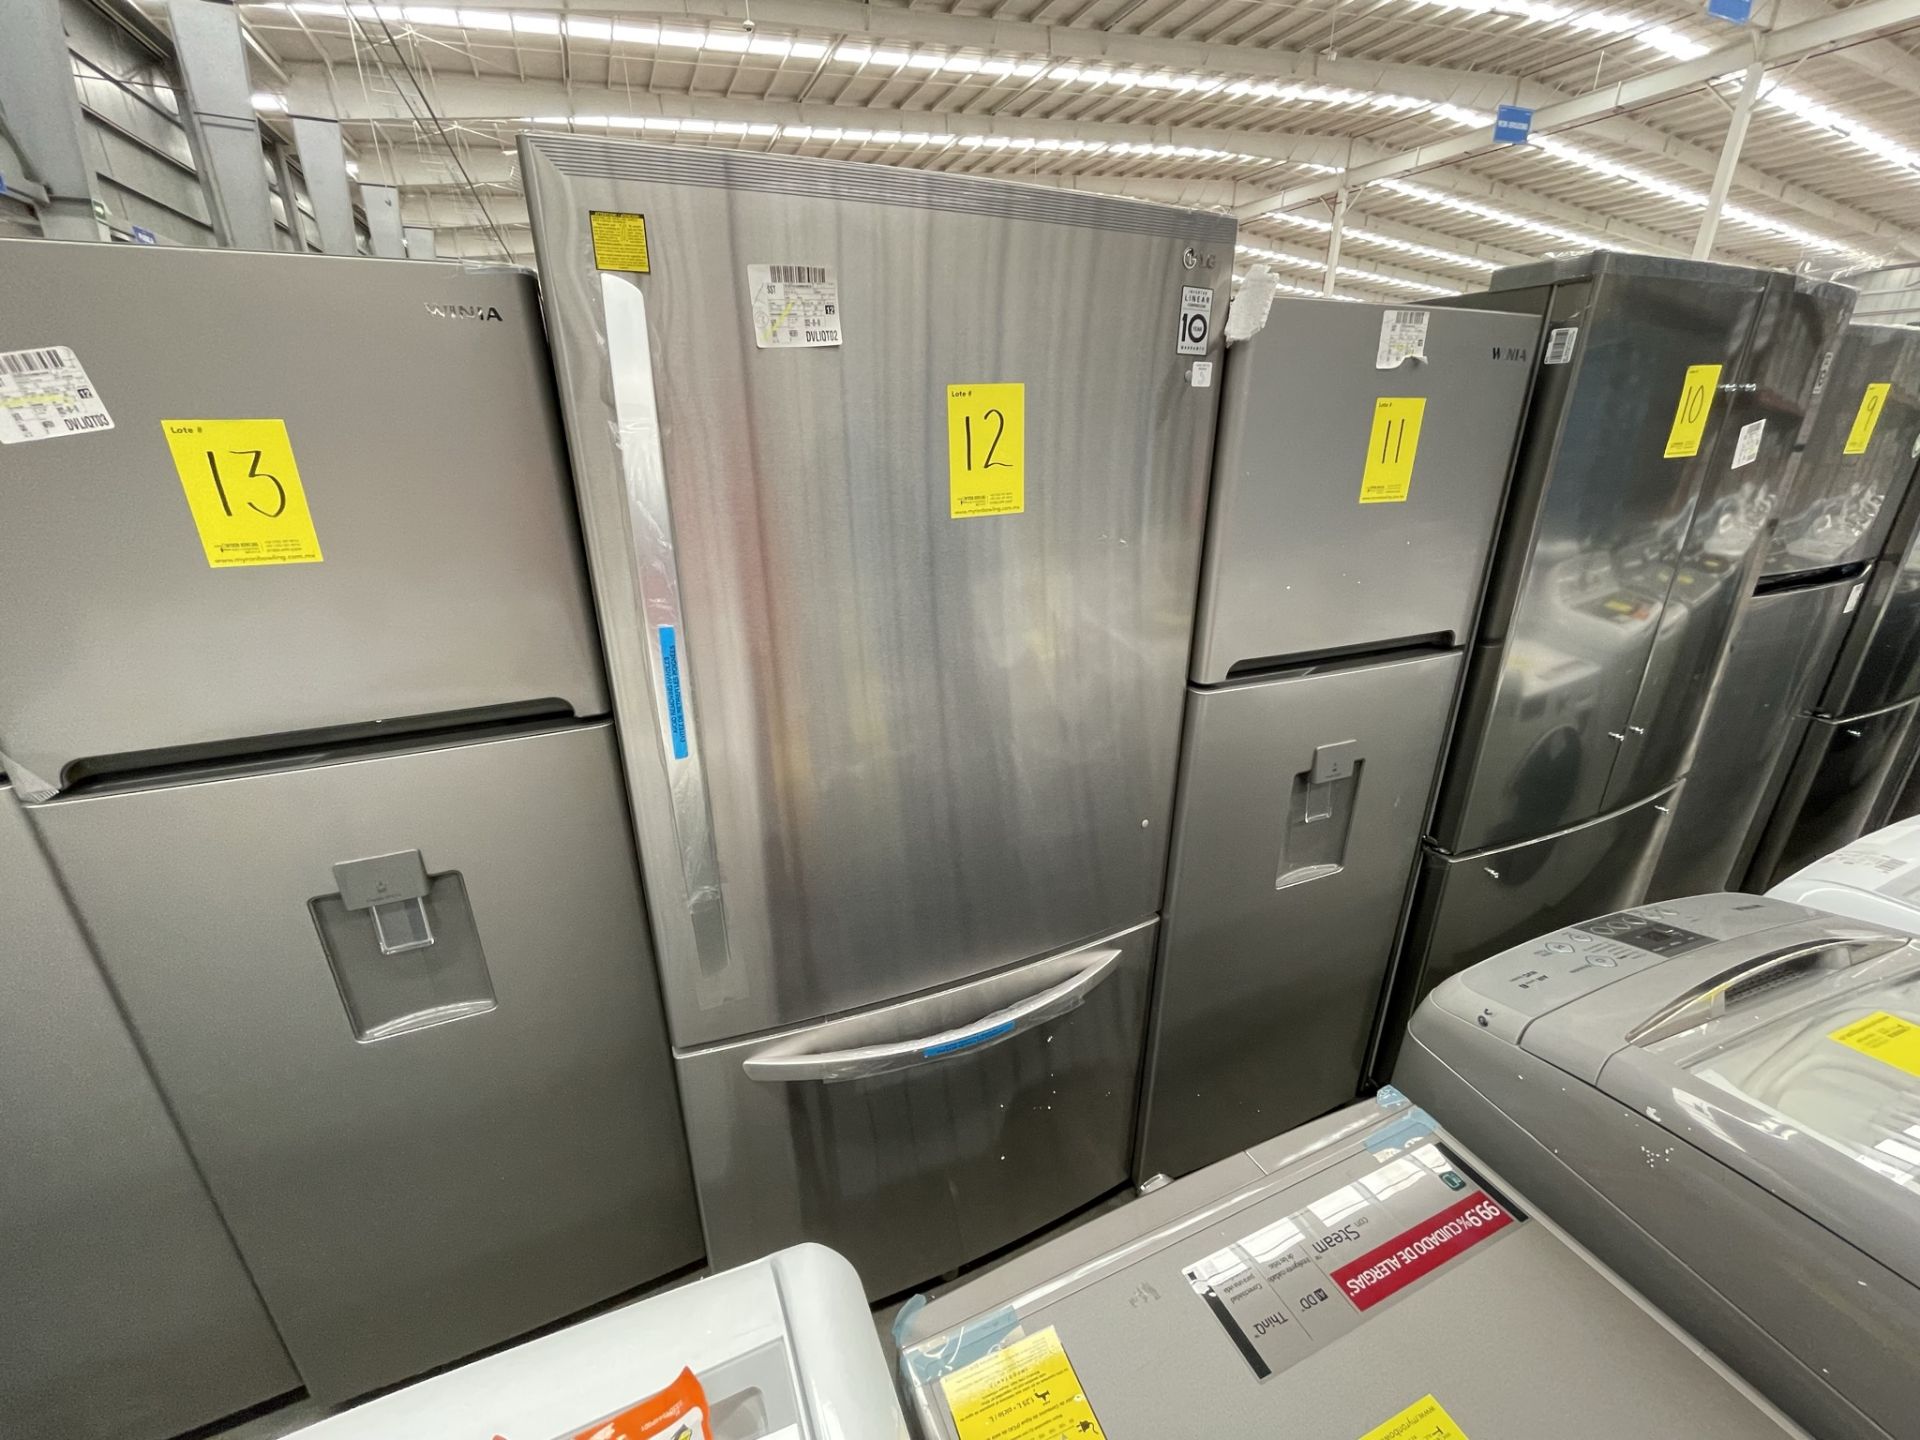 (EQUIPO NUEVO) 1 Refrigerador Marca LG, Modelo LB26BGS, Serie Z4M994, Color GRIS, LB-618873; (Nuevo - Image 5 of 9